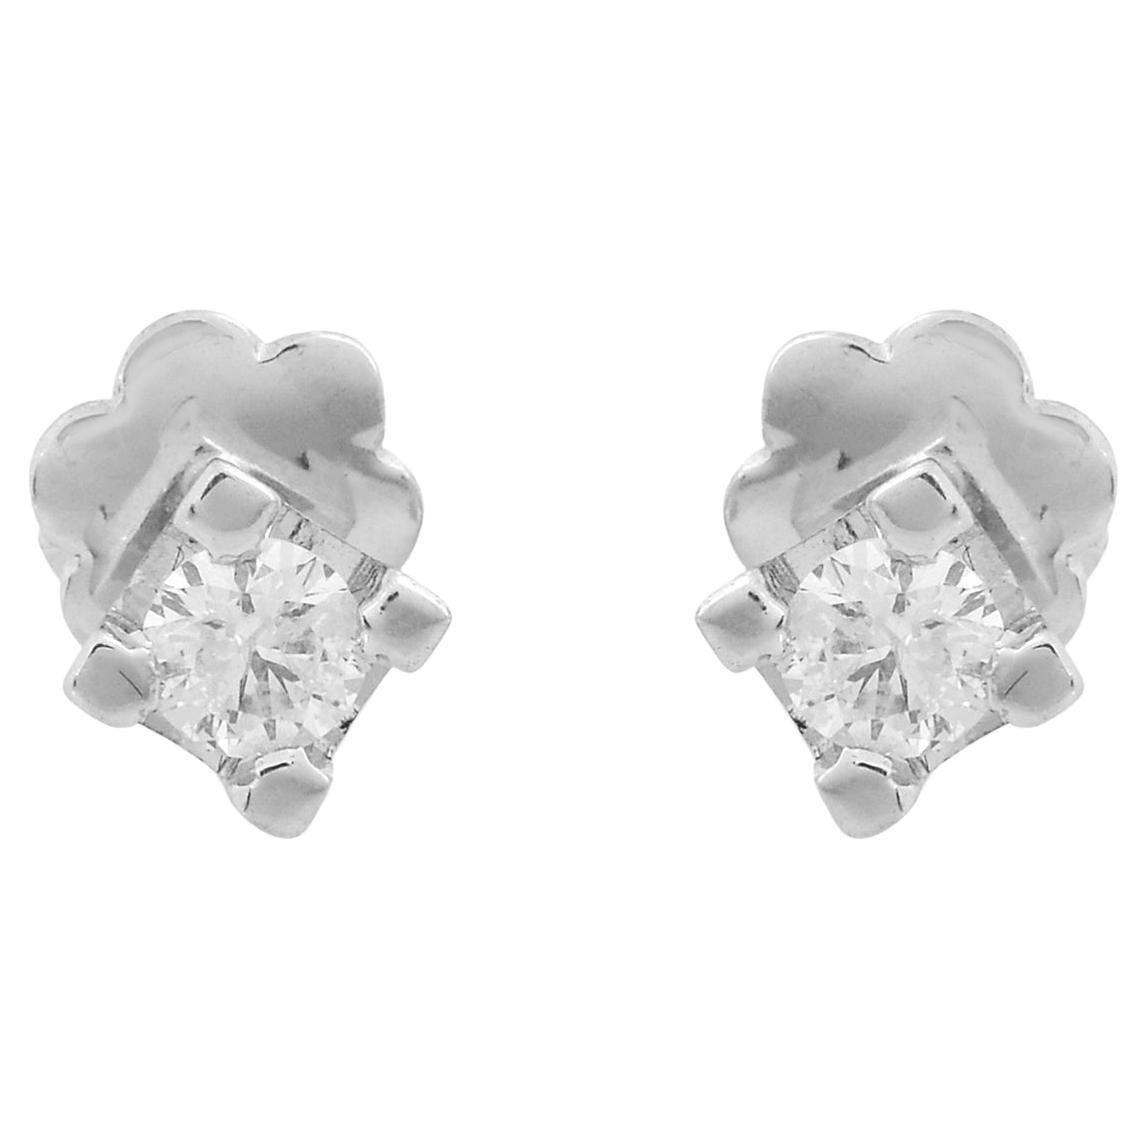 Boucles d'oreilles cloutées en diamant de 0,40 carat, pureté SI, couleur HI, en or blanc 18 carats.